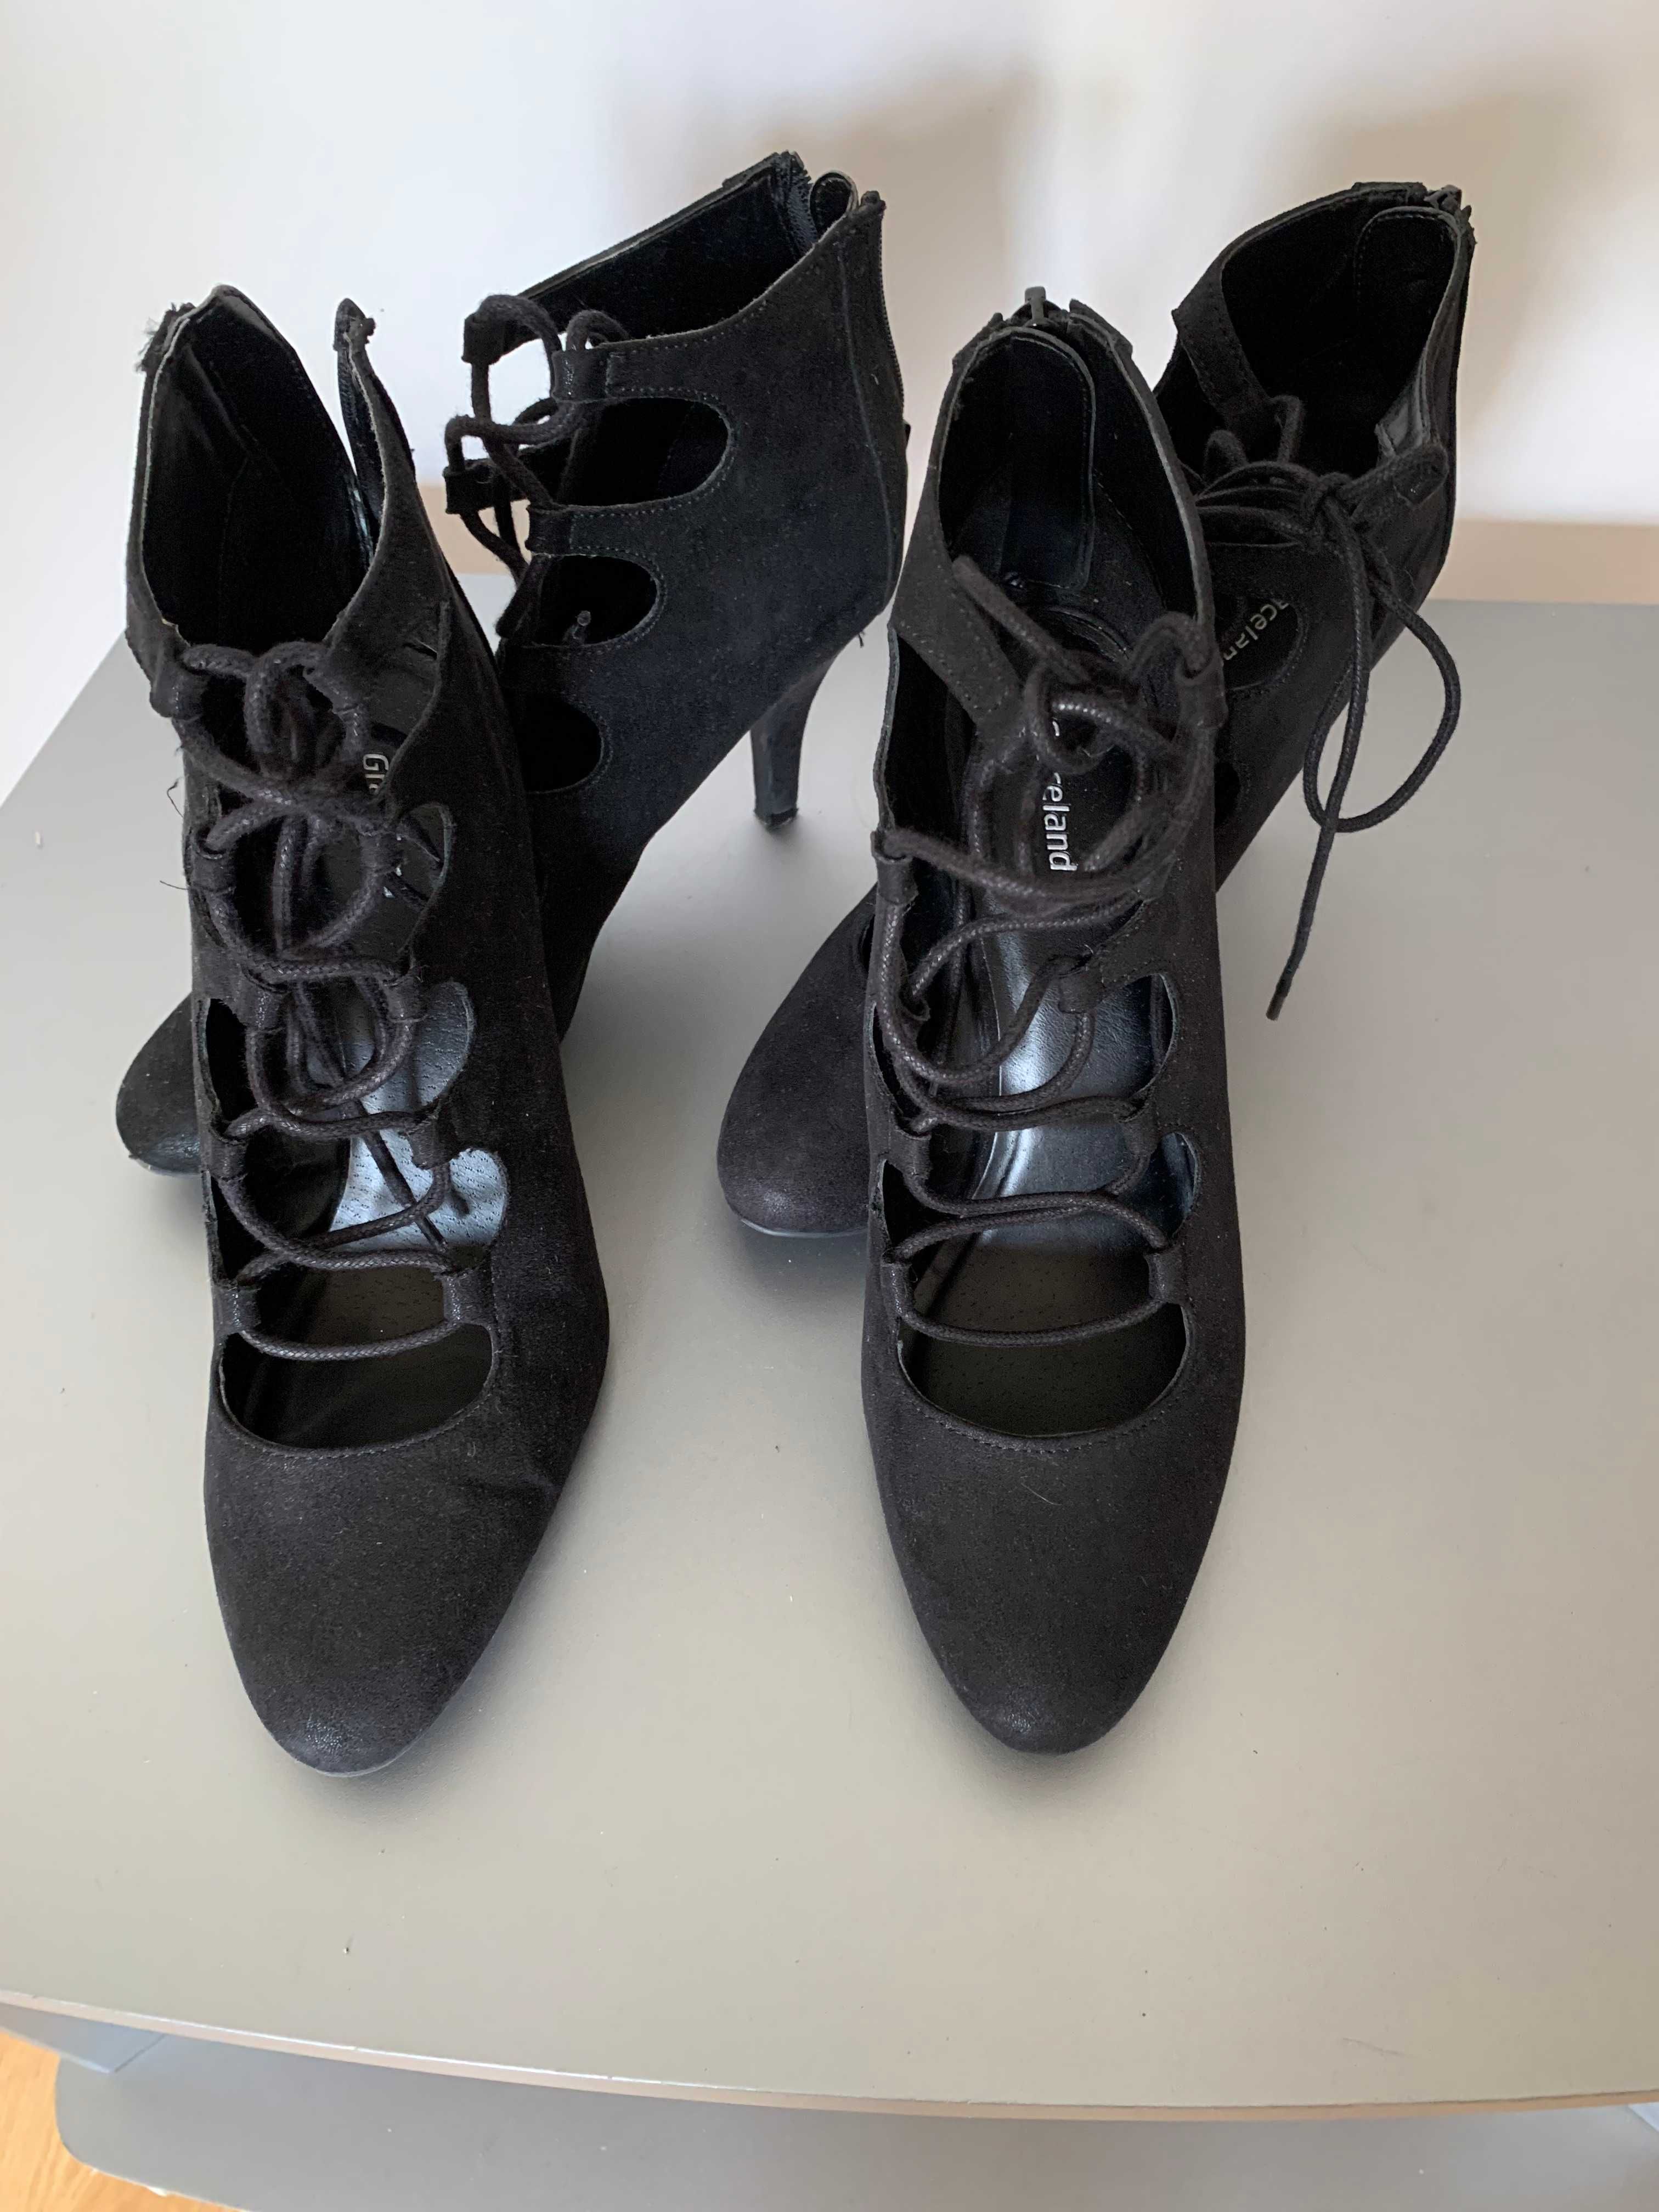 czółenka damskie buty letnie szpilki wiązane czarne 39/40 Graceland x2